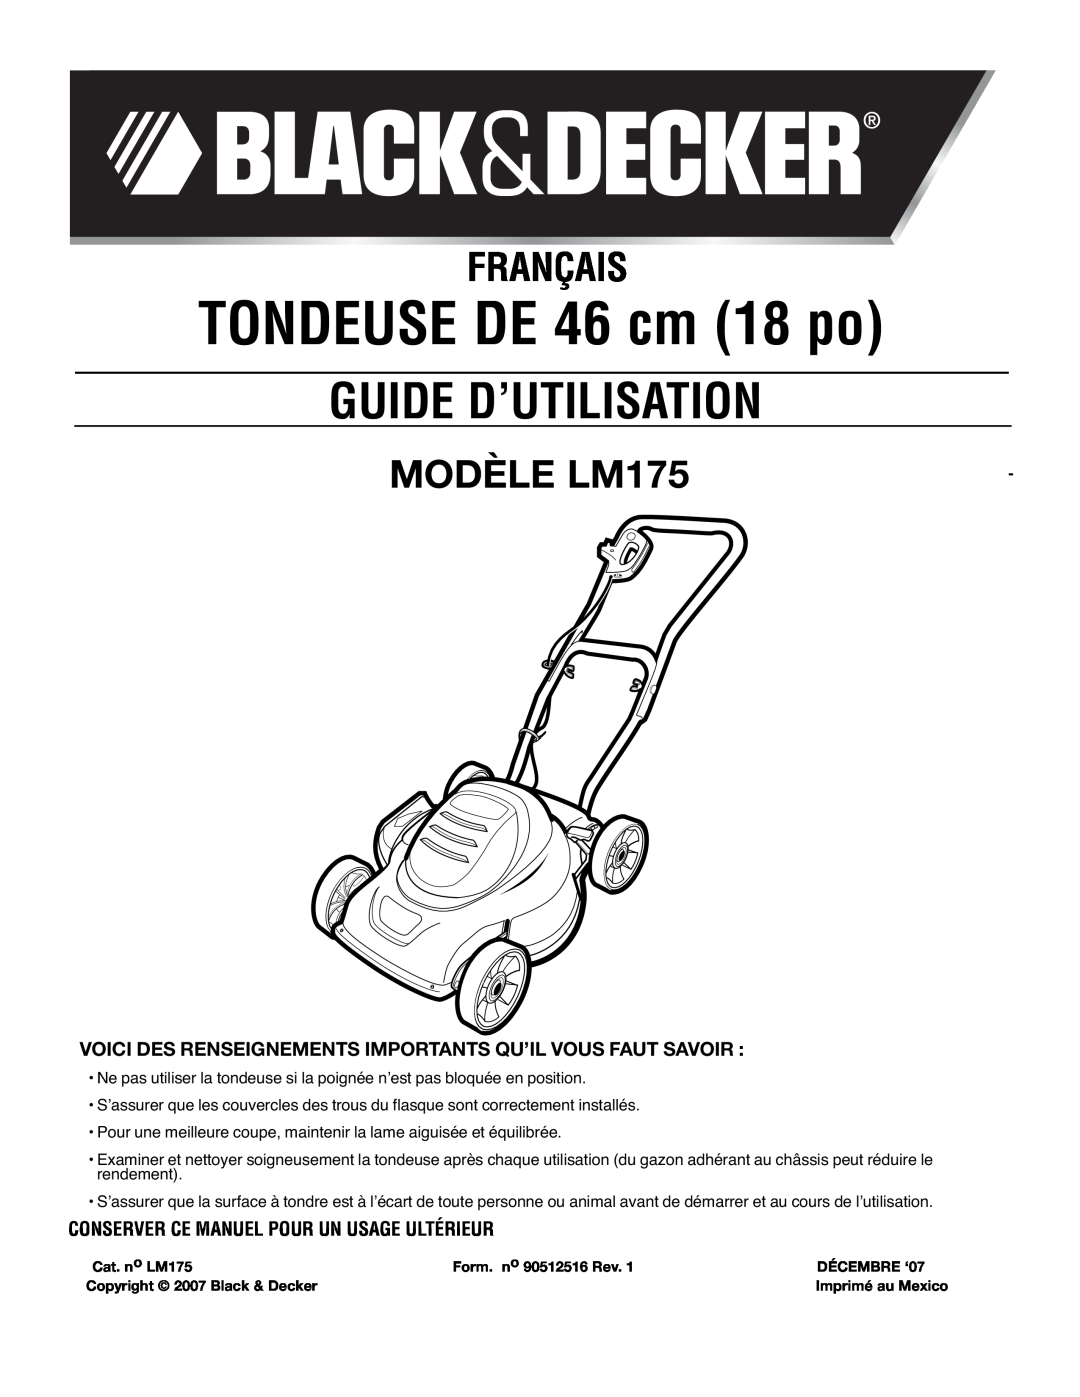 Black & Decker instruction manual TONDEUSE DE 46 cm 18 po, Guide D’Utilisation, Français, MODÈLE LM175 